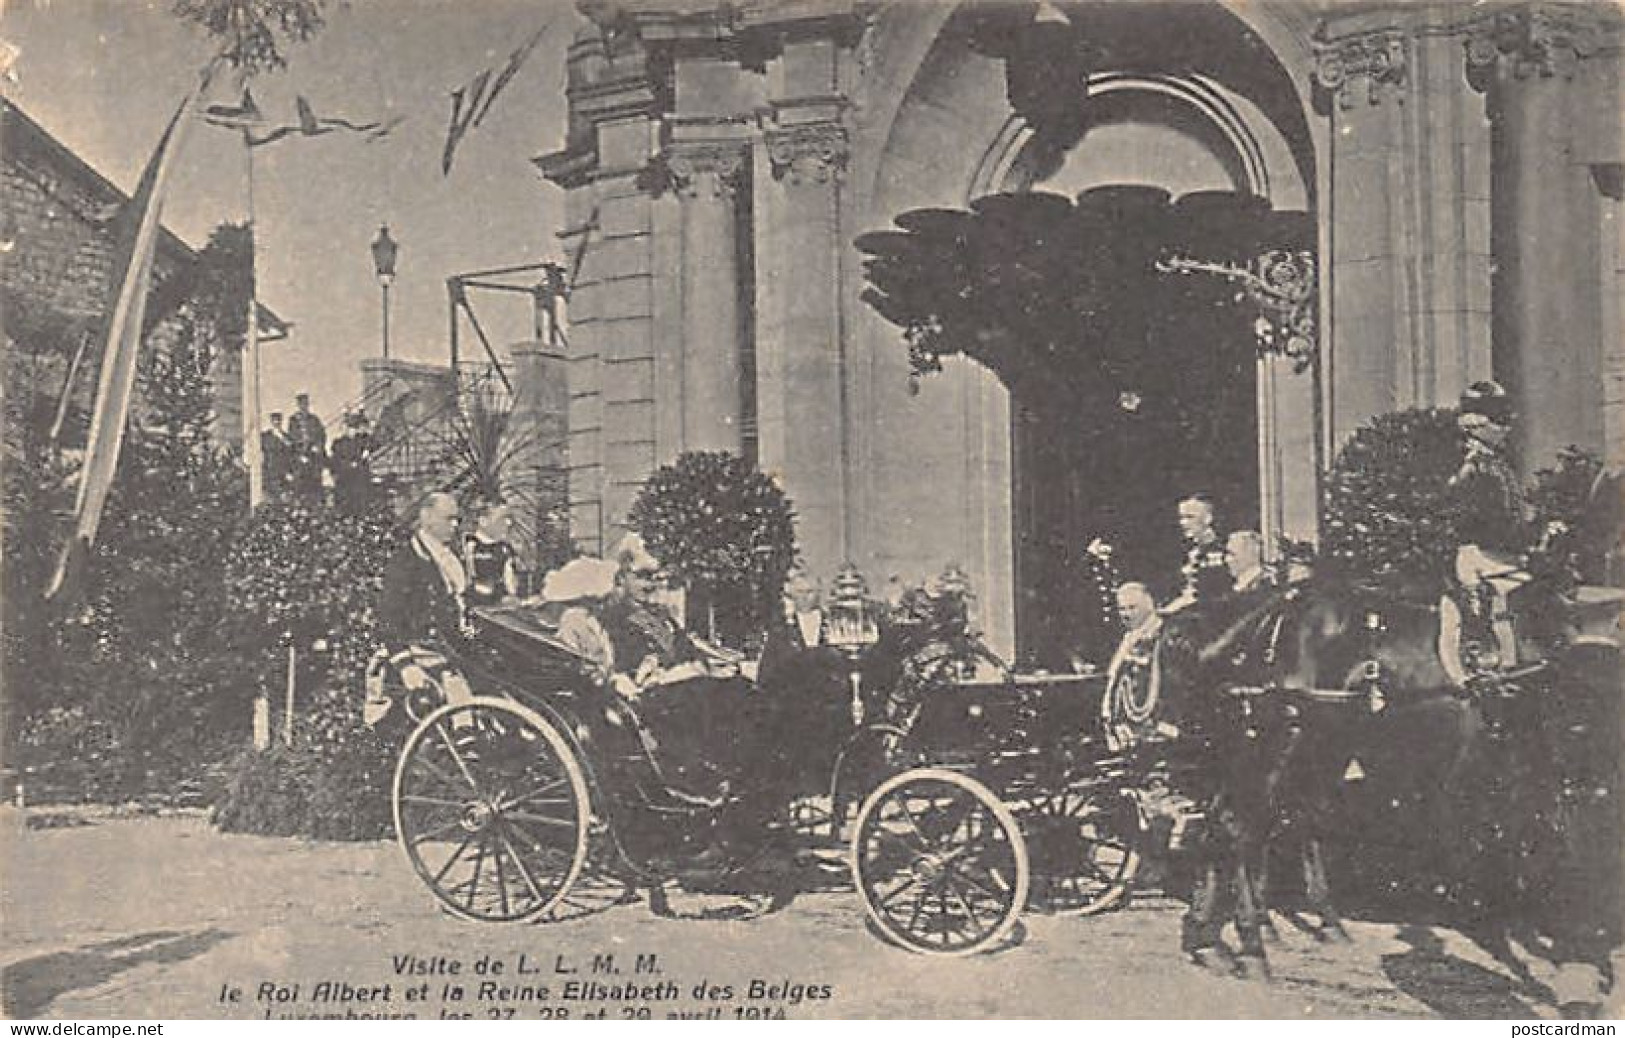 LUXEMBOURG - VILLE - Visite Du Roi Albert Des Belges Les 27, 28 & 29 Avril 1914  - Luxembourg - Ville